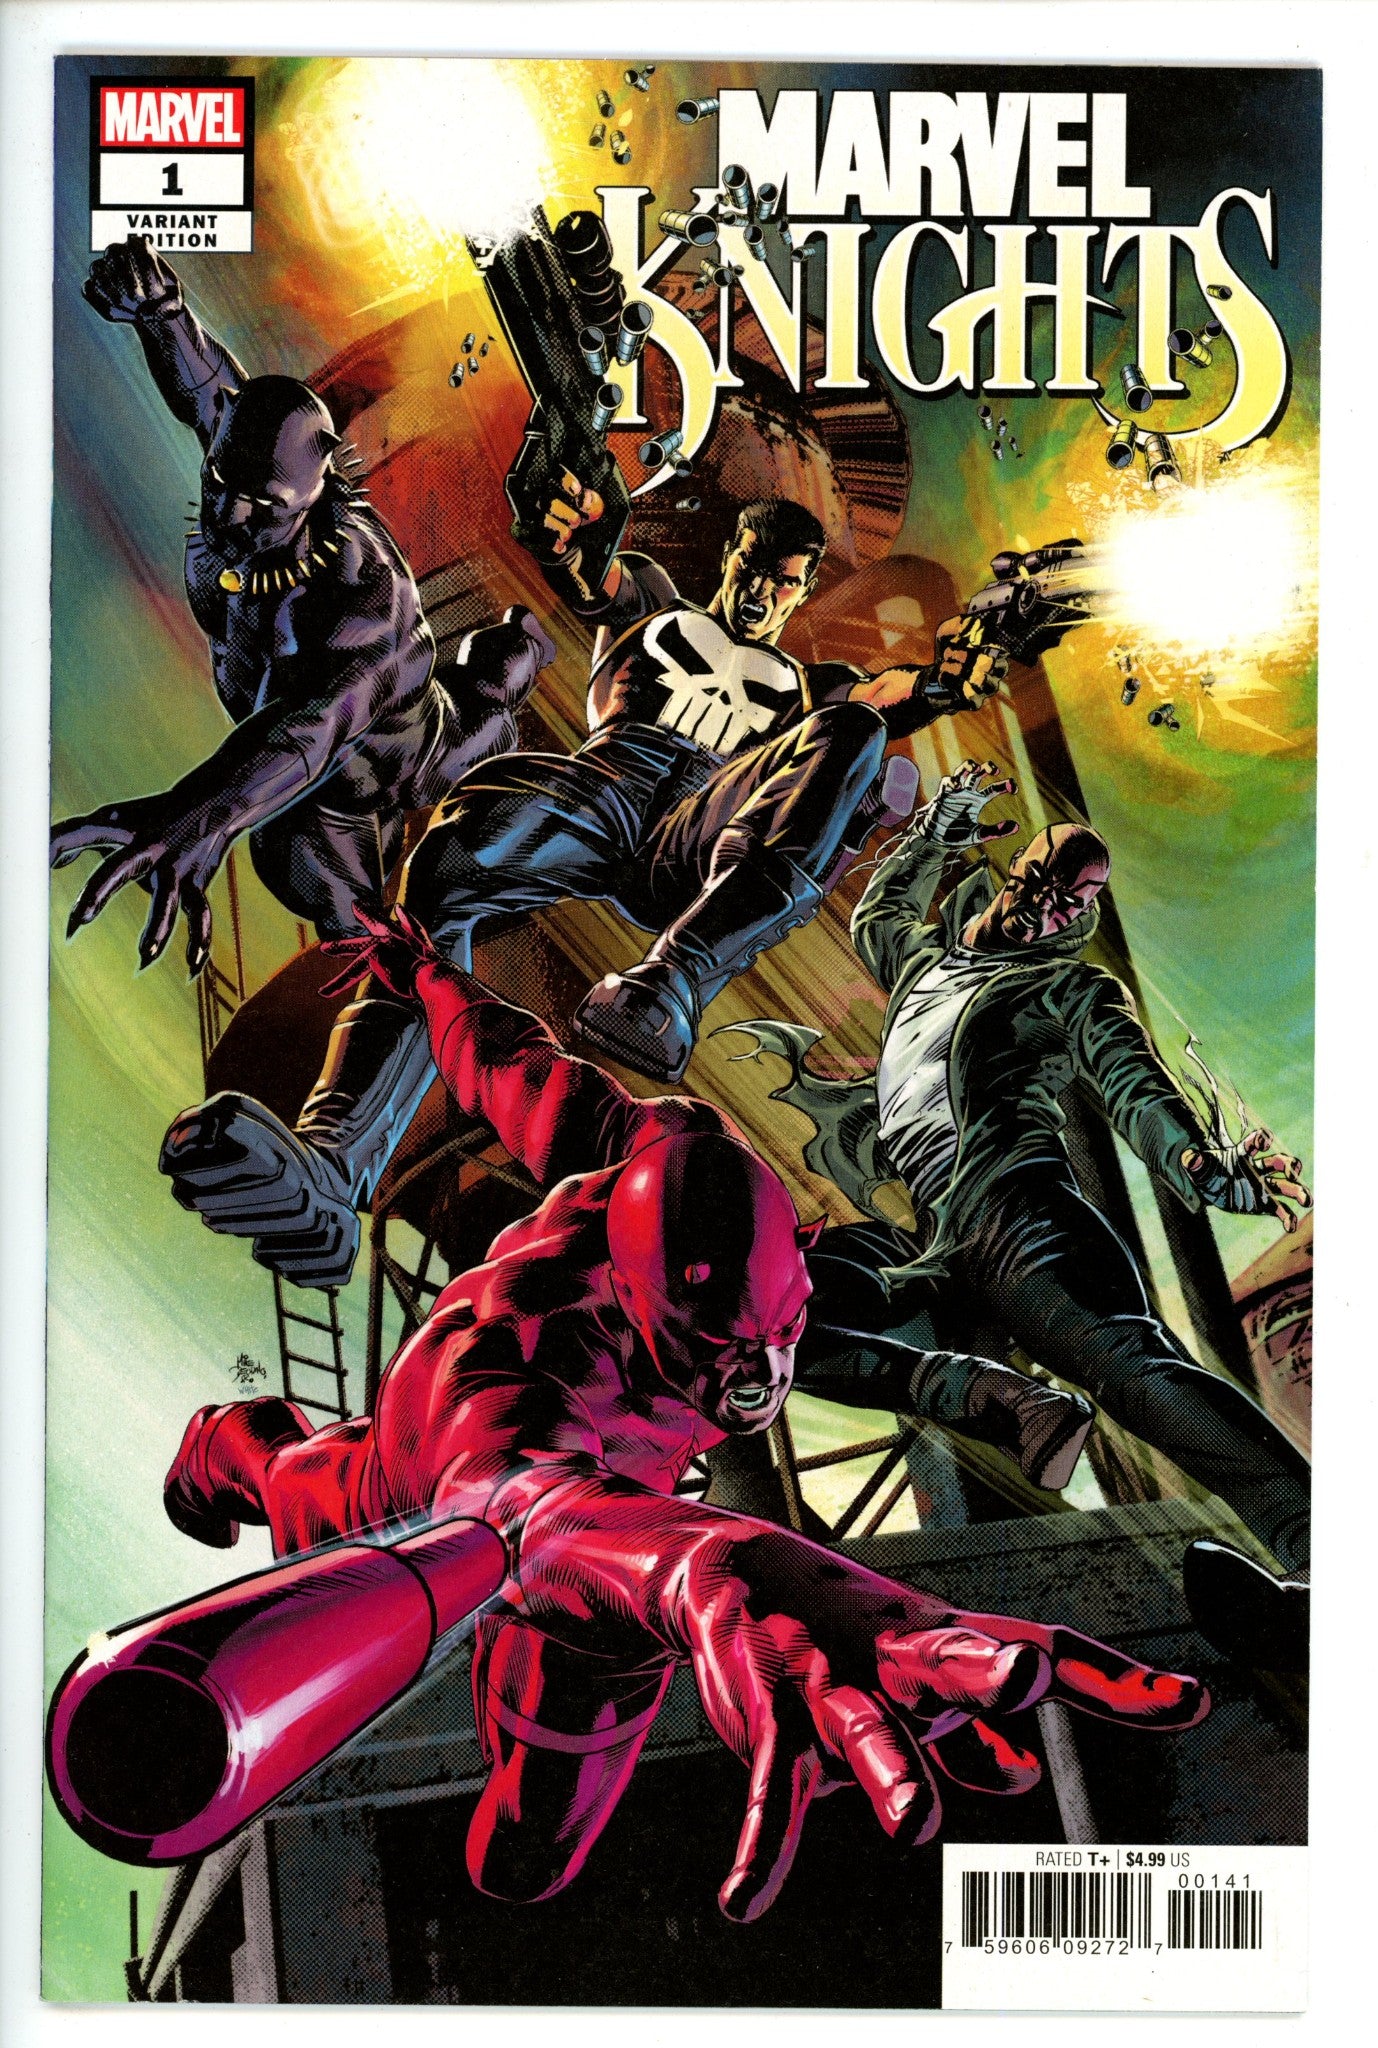 Marvel Knights Vol 3 1 Deodato Variant